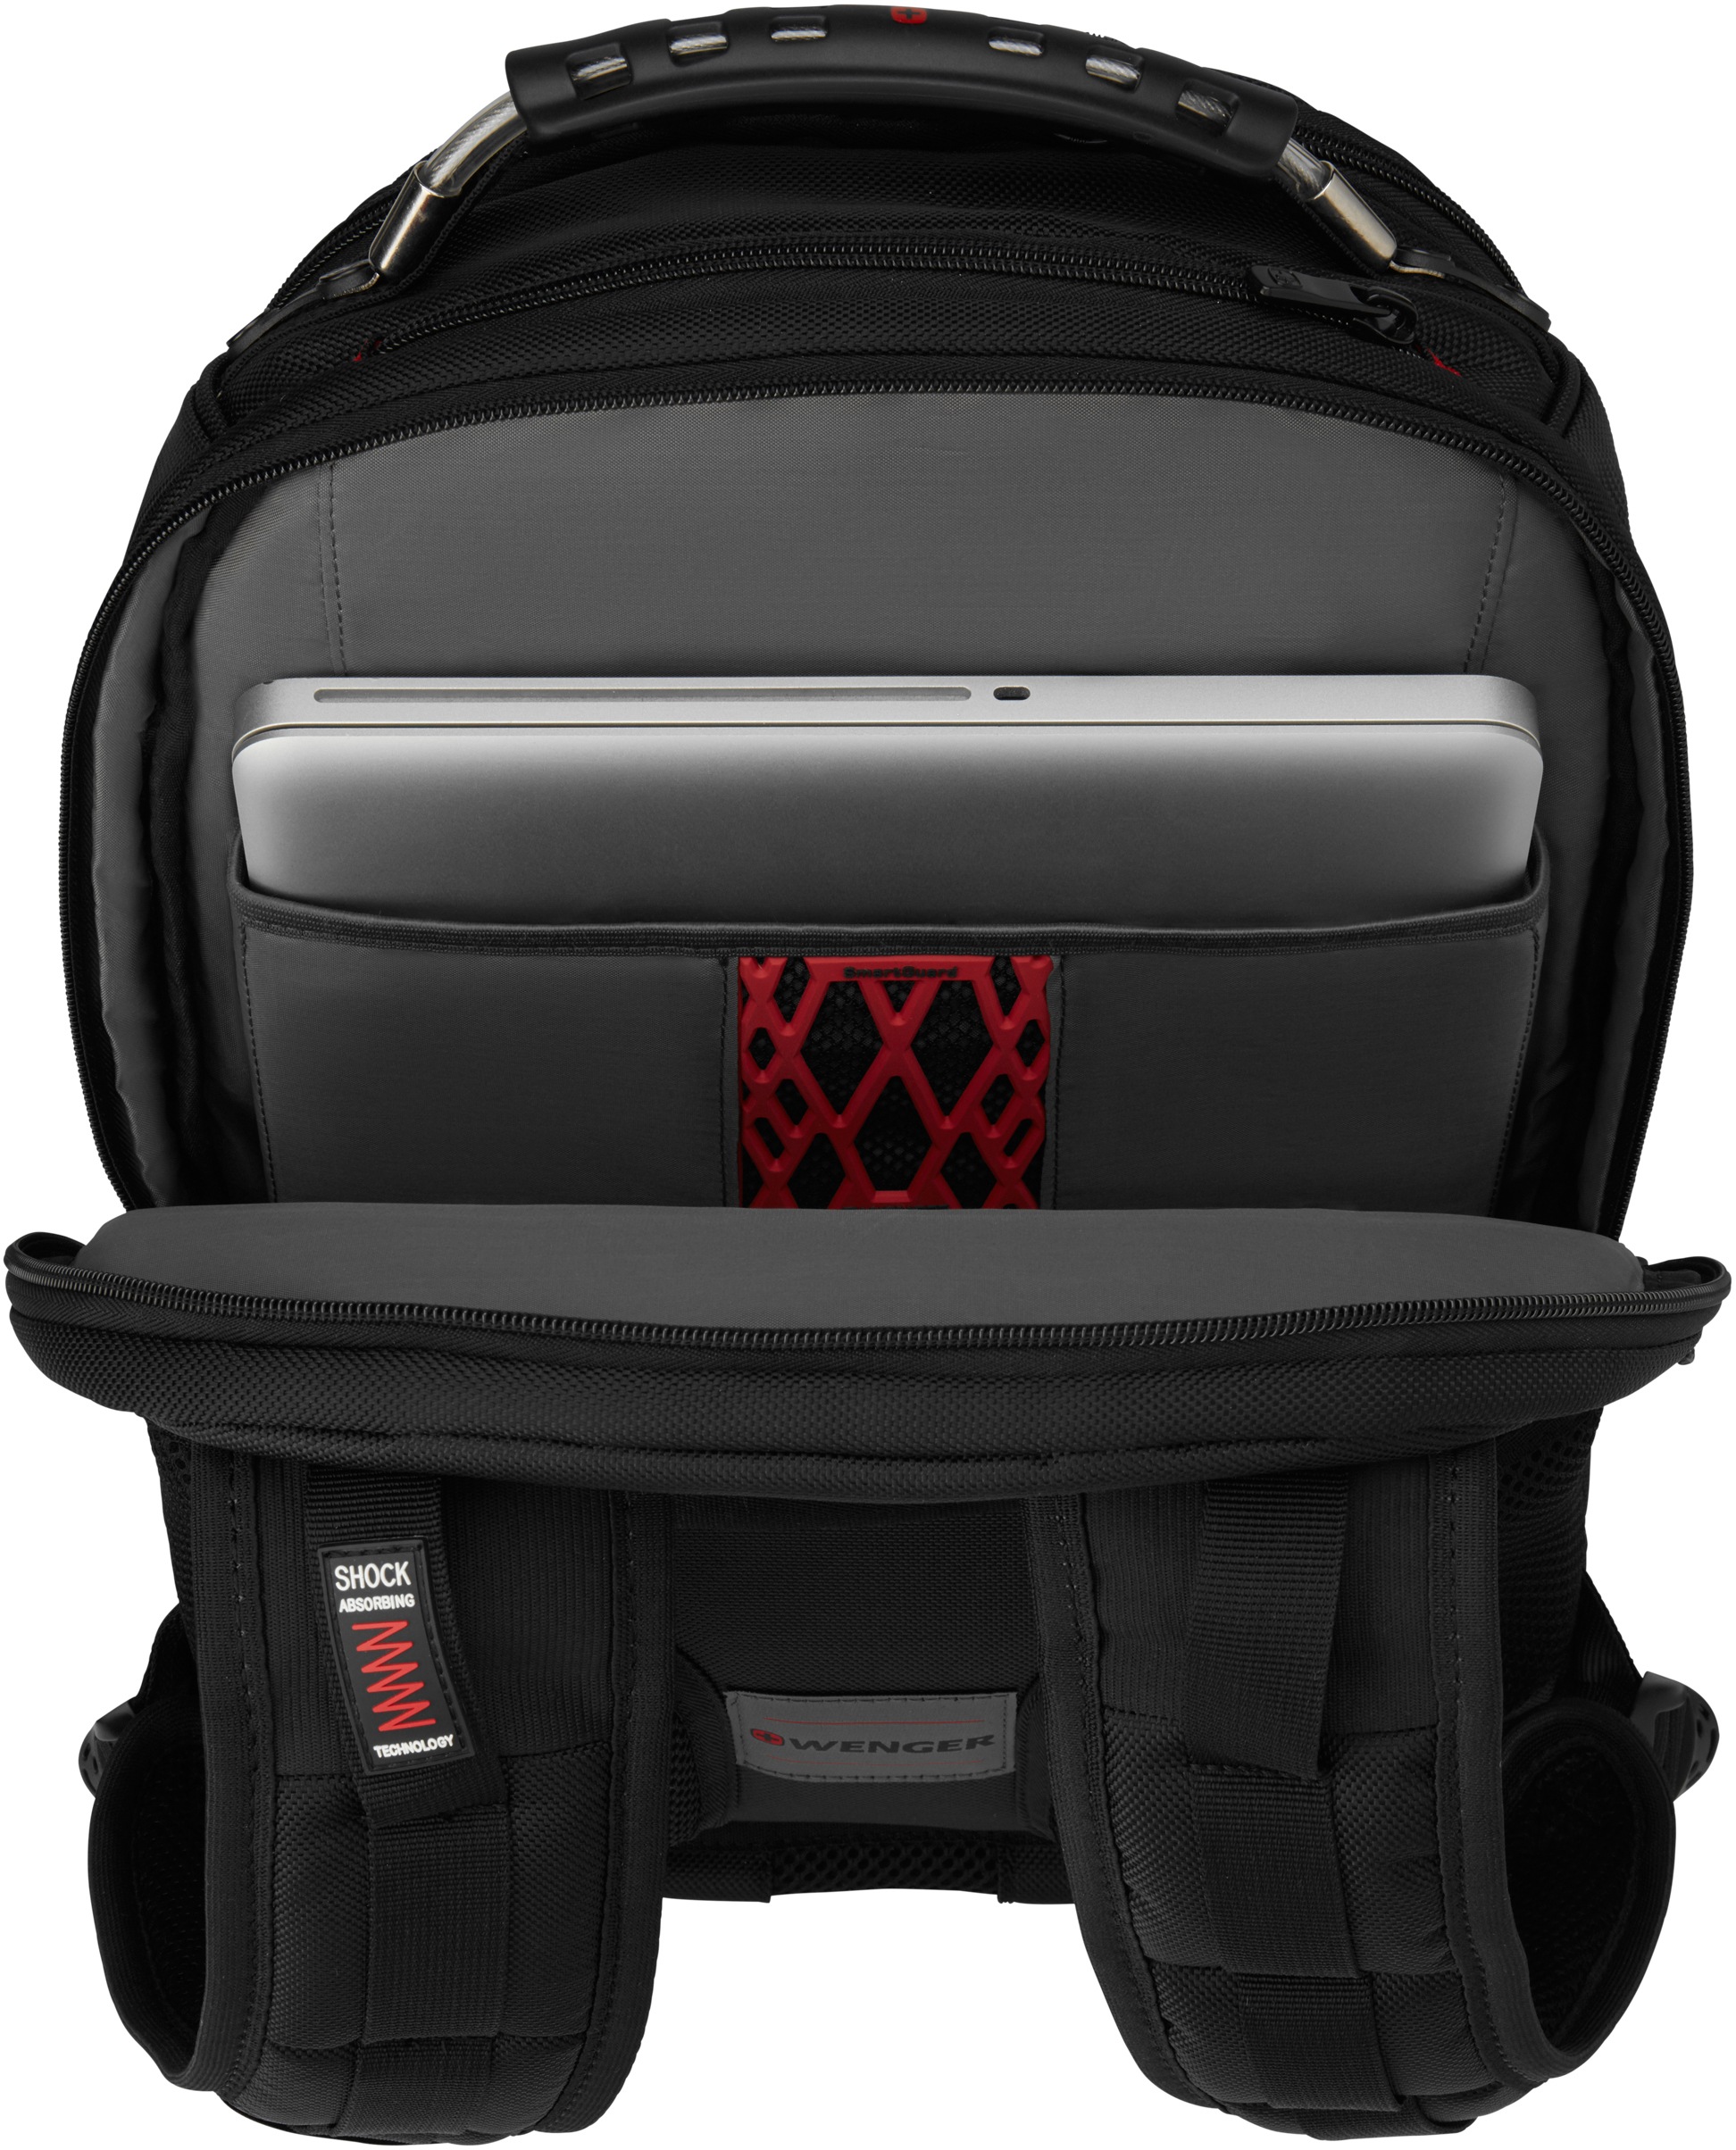 Wenger Laptoprucksack »Ibex Deluxe, schwarz«, für Laptops bis 16 Zoll; inkl. USB-Schleuse